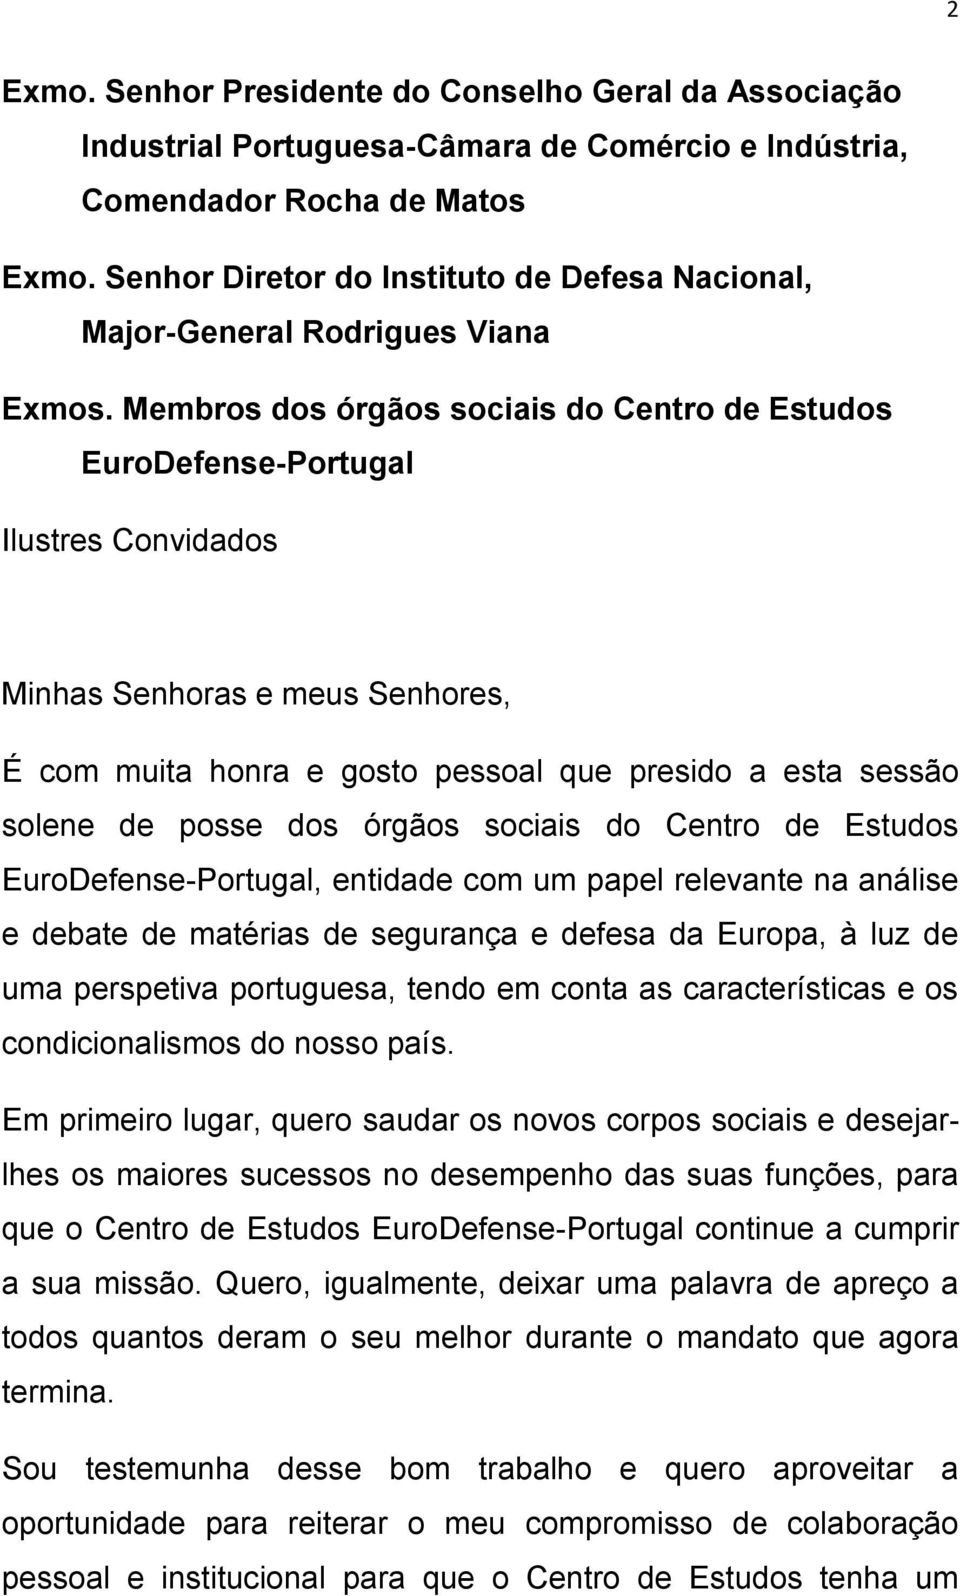 Membros dos órgãos sociais do Centro de Estudos EuroDefense-Portugal Ilustres Convidados Minhas Senhoras e meus Senhores, É com muita honra e gosto pessoal que presido a esta sessão solene de posse